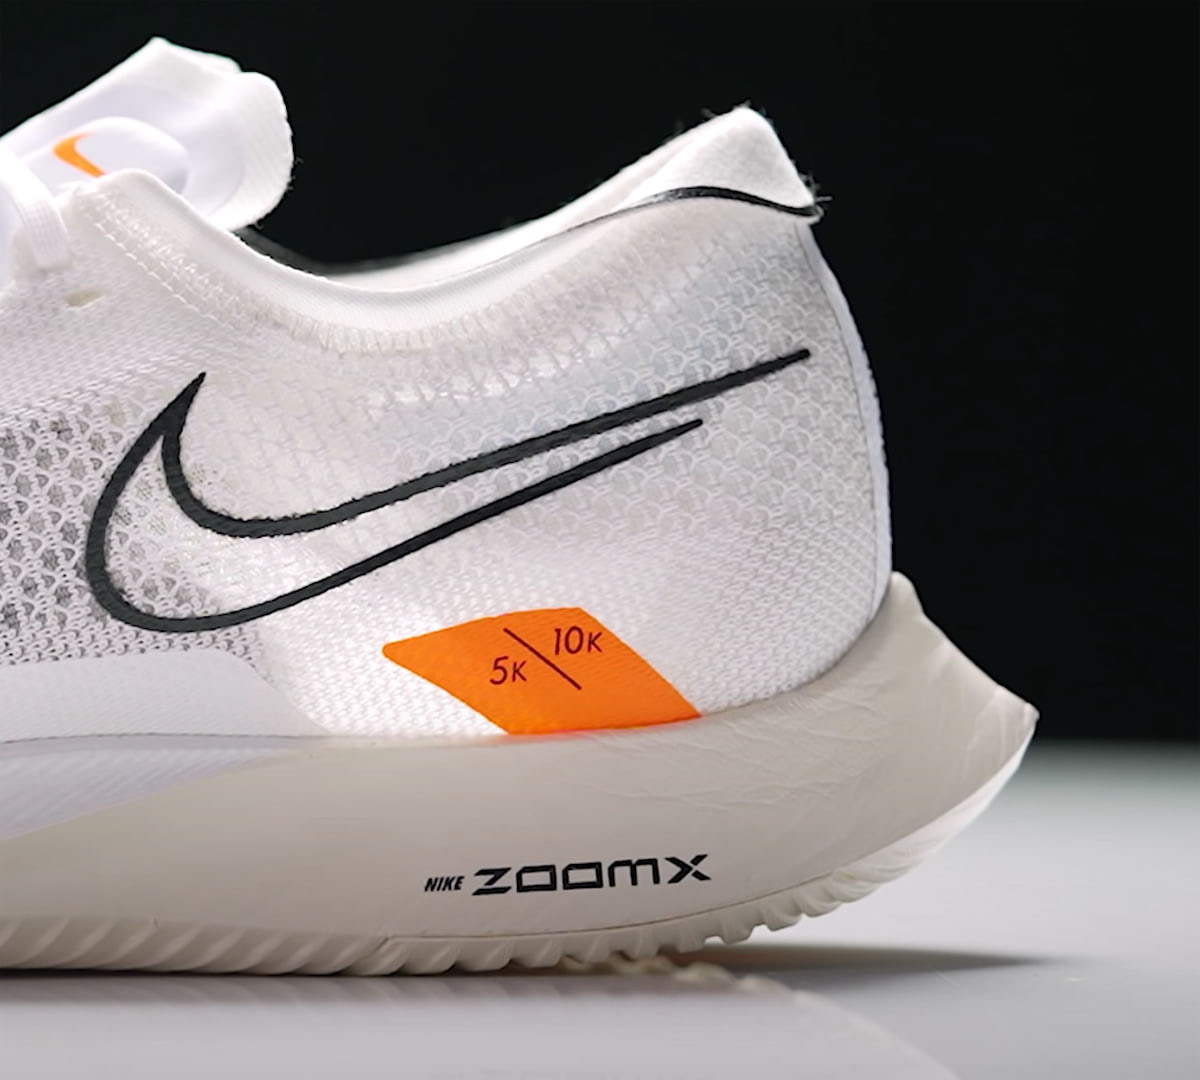 márketing binario bostezando Análisis Nike ZoomX StreakFly: la zapatilla para 5K y 10K, opinión